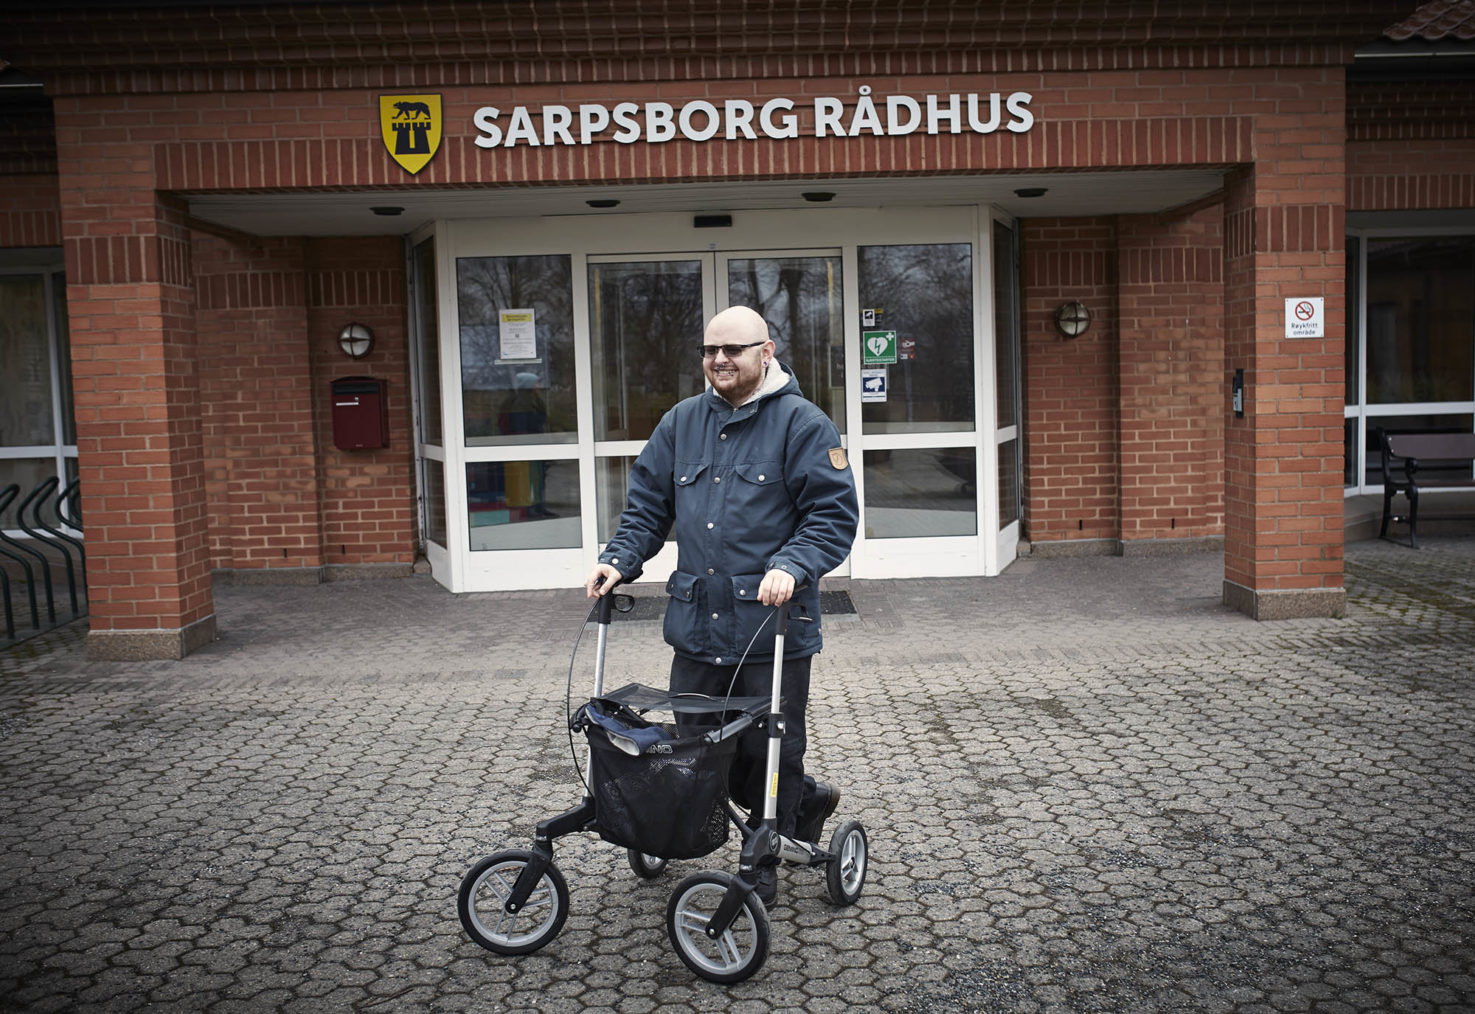 Axel med rullatoren foran inngangen til Sarpsborg rådhus.